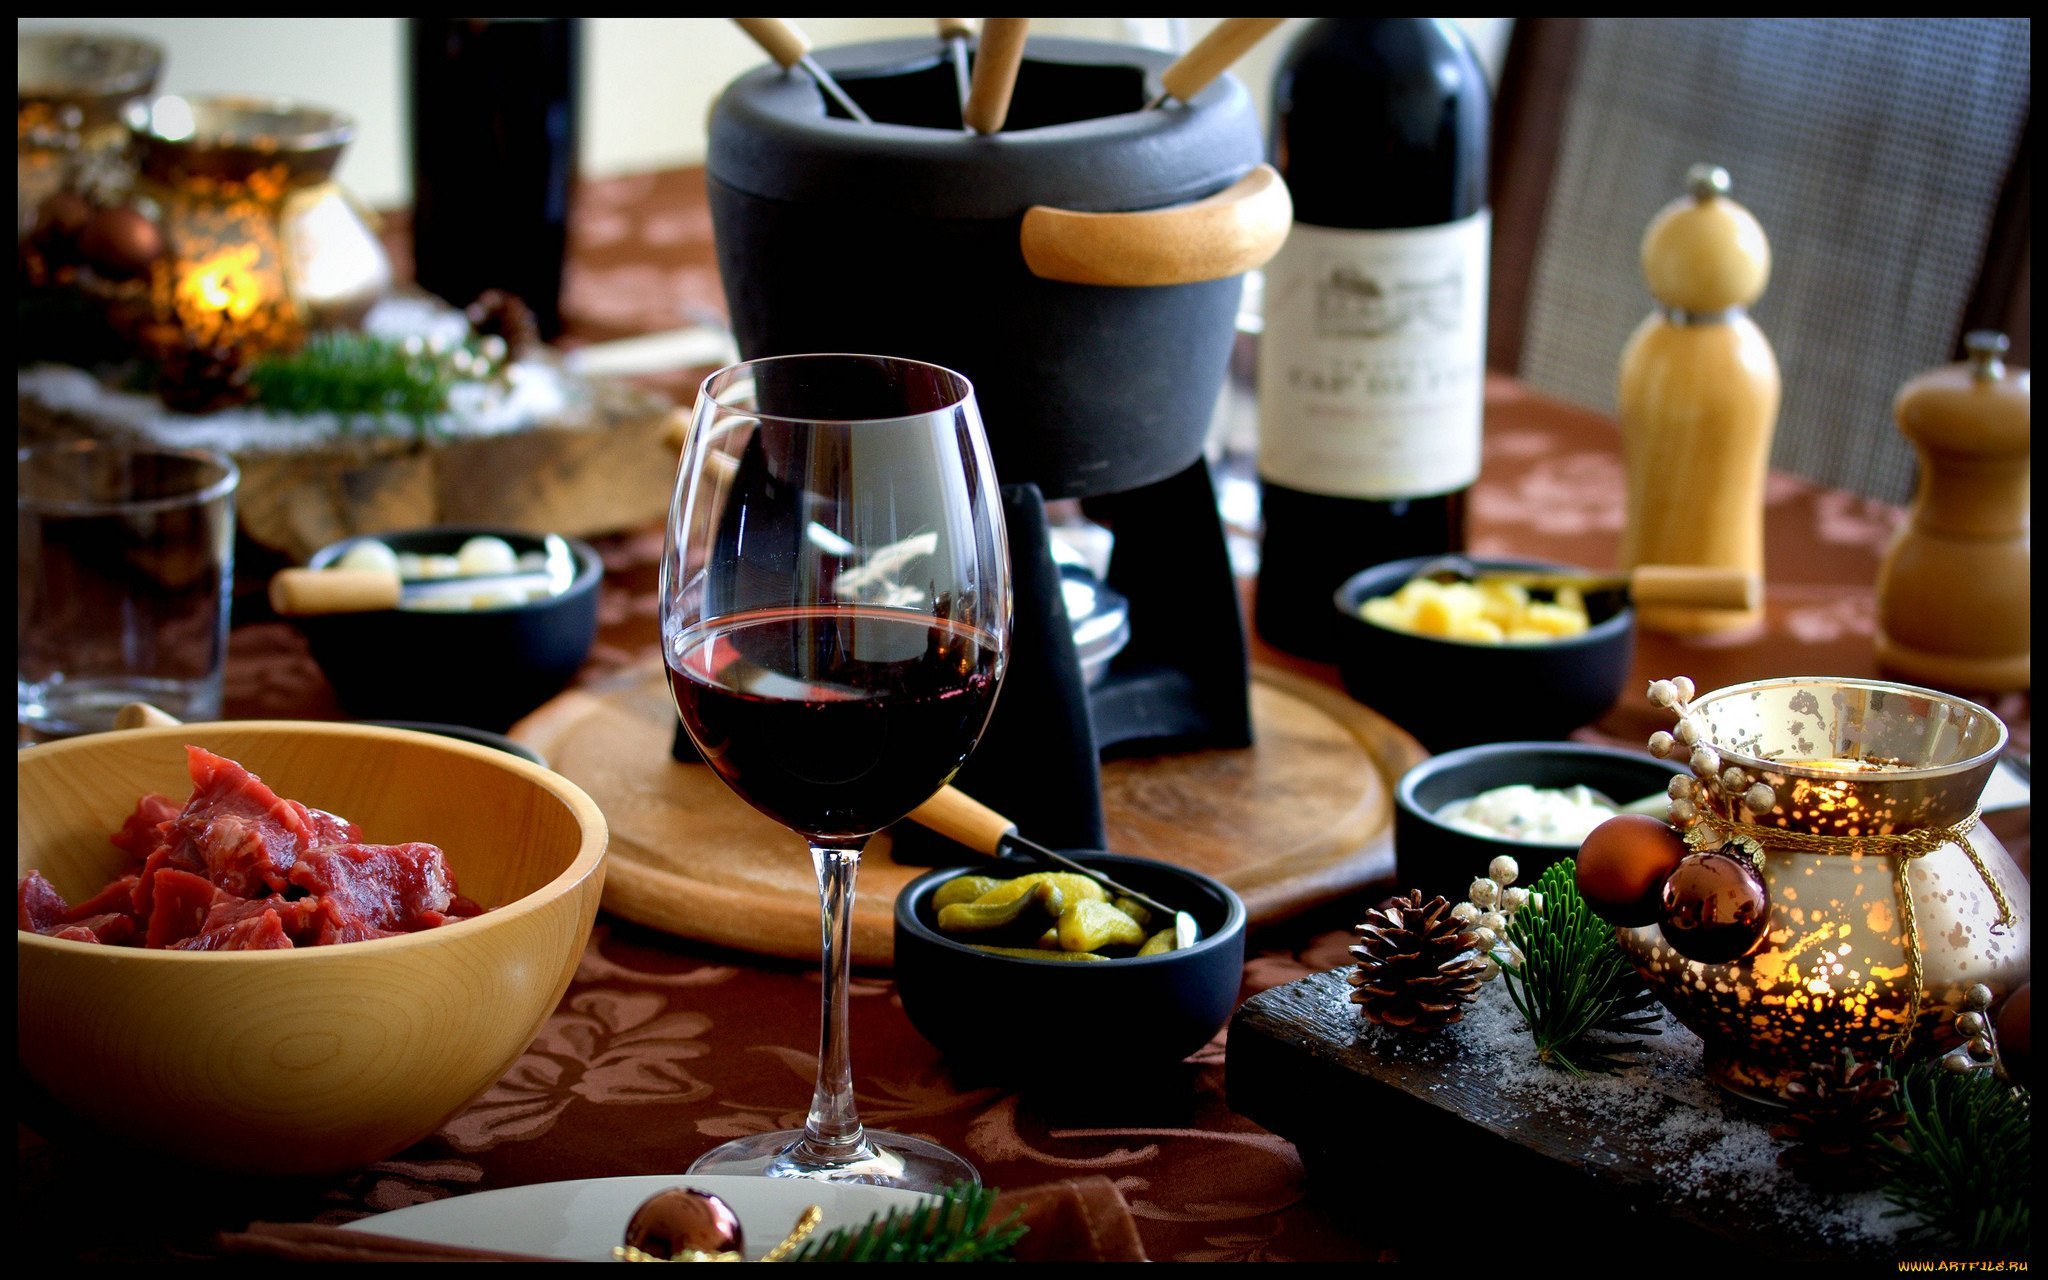 Ужин к вину. Сервировка стола с вином. Стол в ресторане с едой. Праздничный стол с вином. Стол с вином и закусками.